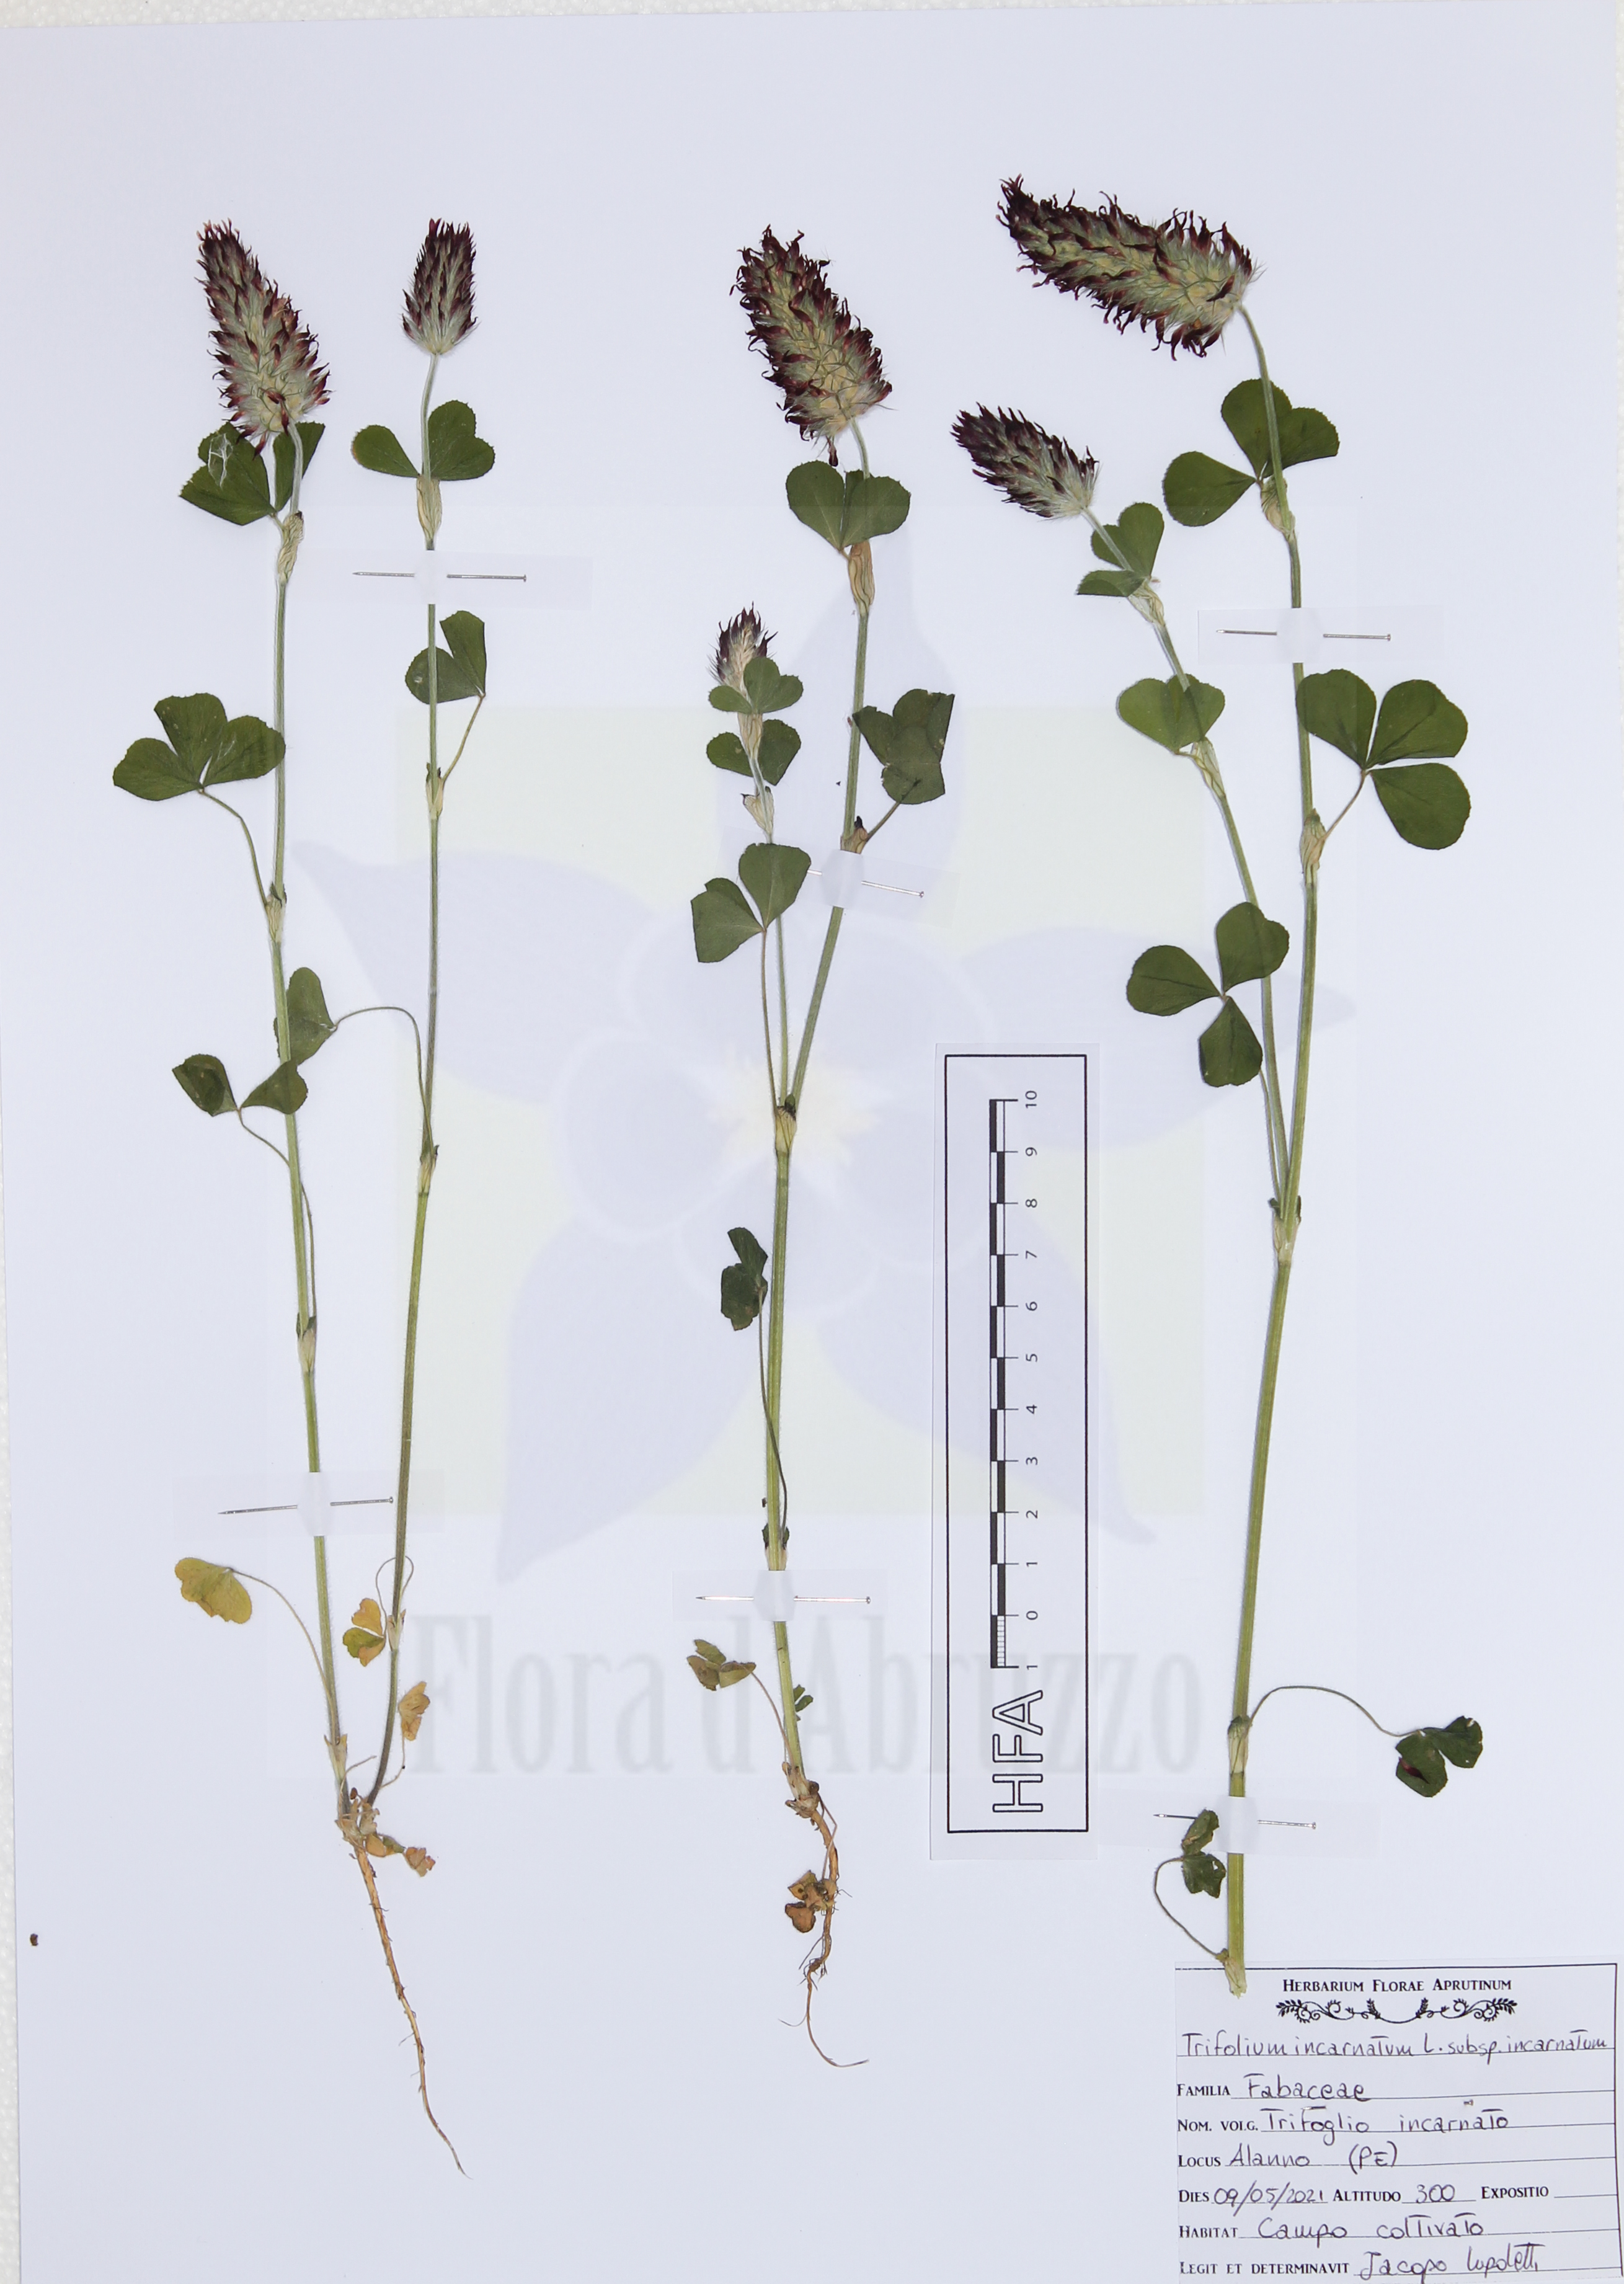 Trifolium incarnatum L. subsp. incarnatum